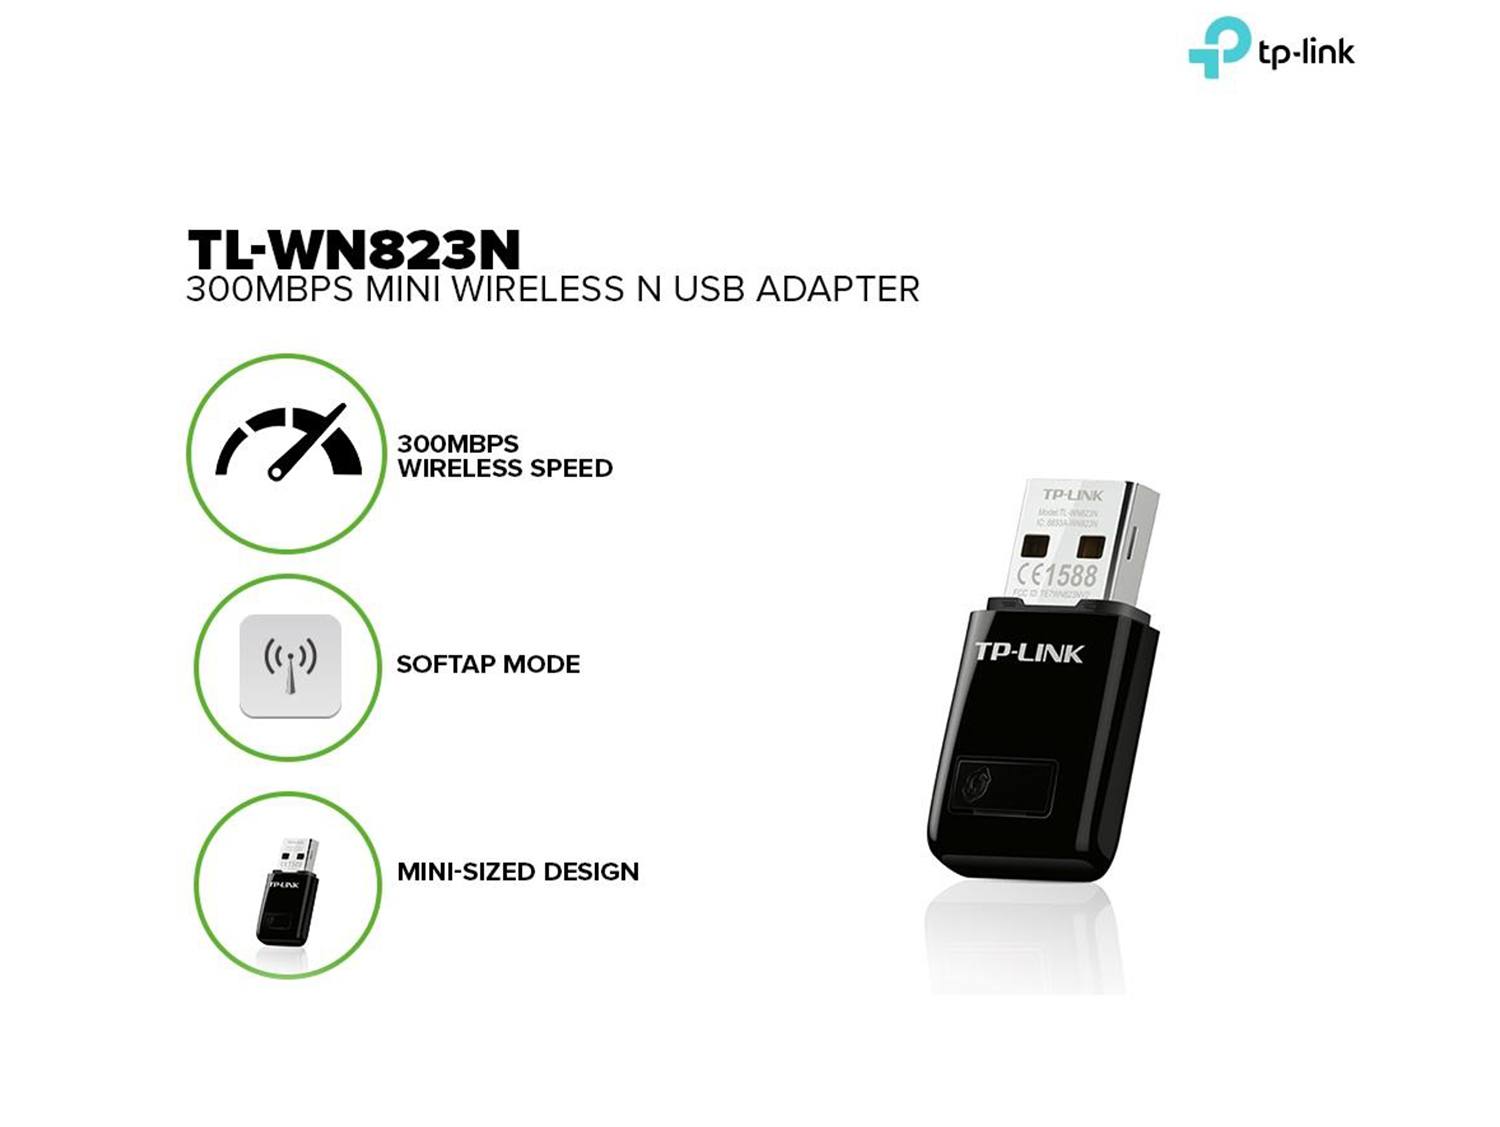 TP-Link 300Mbps Mini Wireless N USB Adapter – TL-WN823N